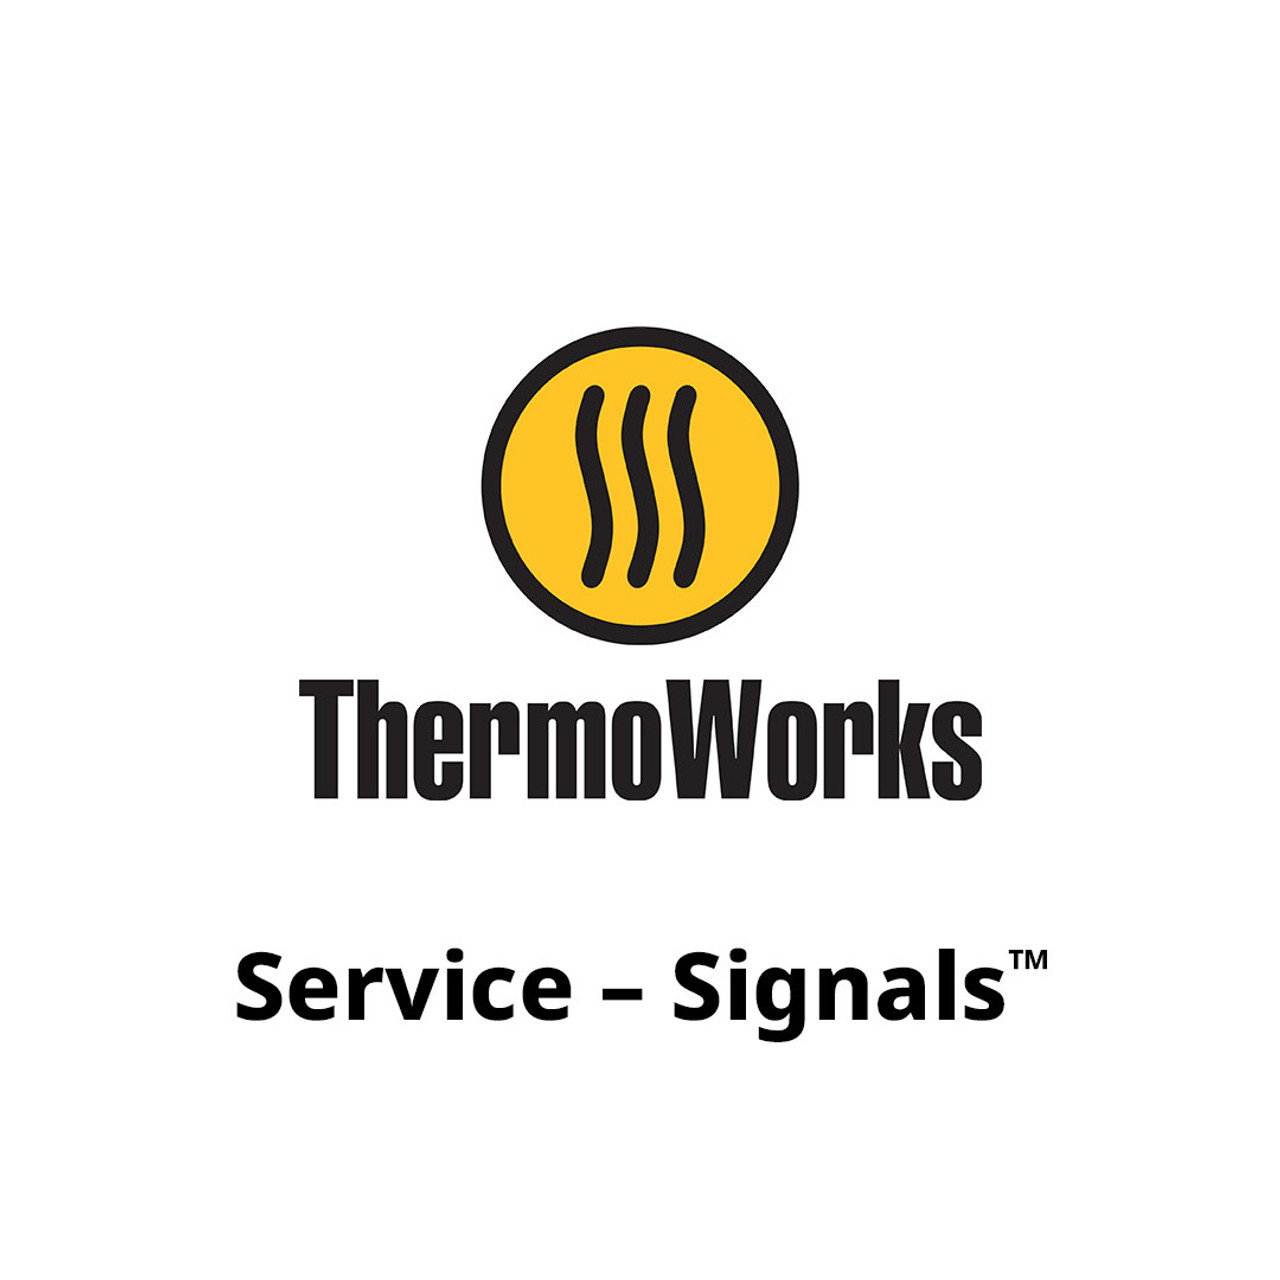 Service - Signals